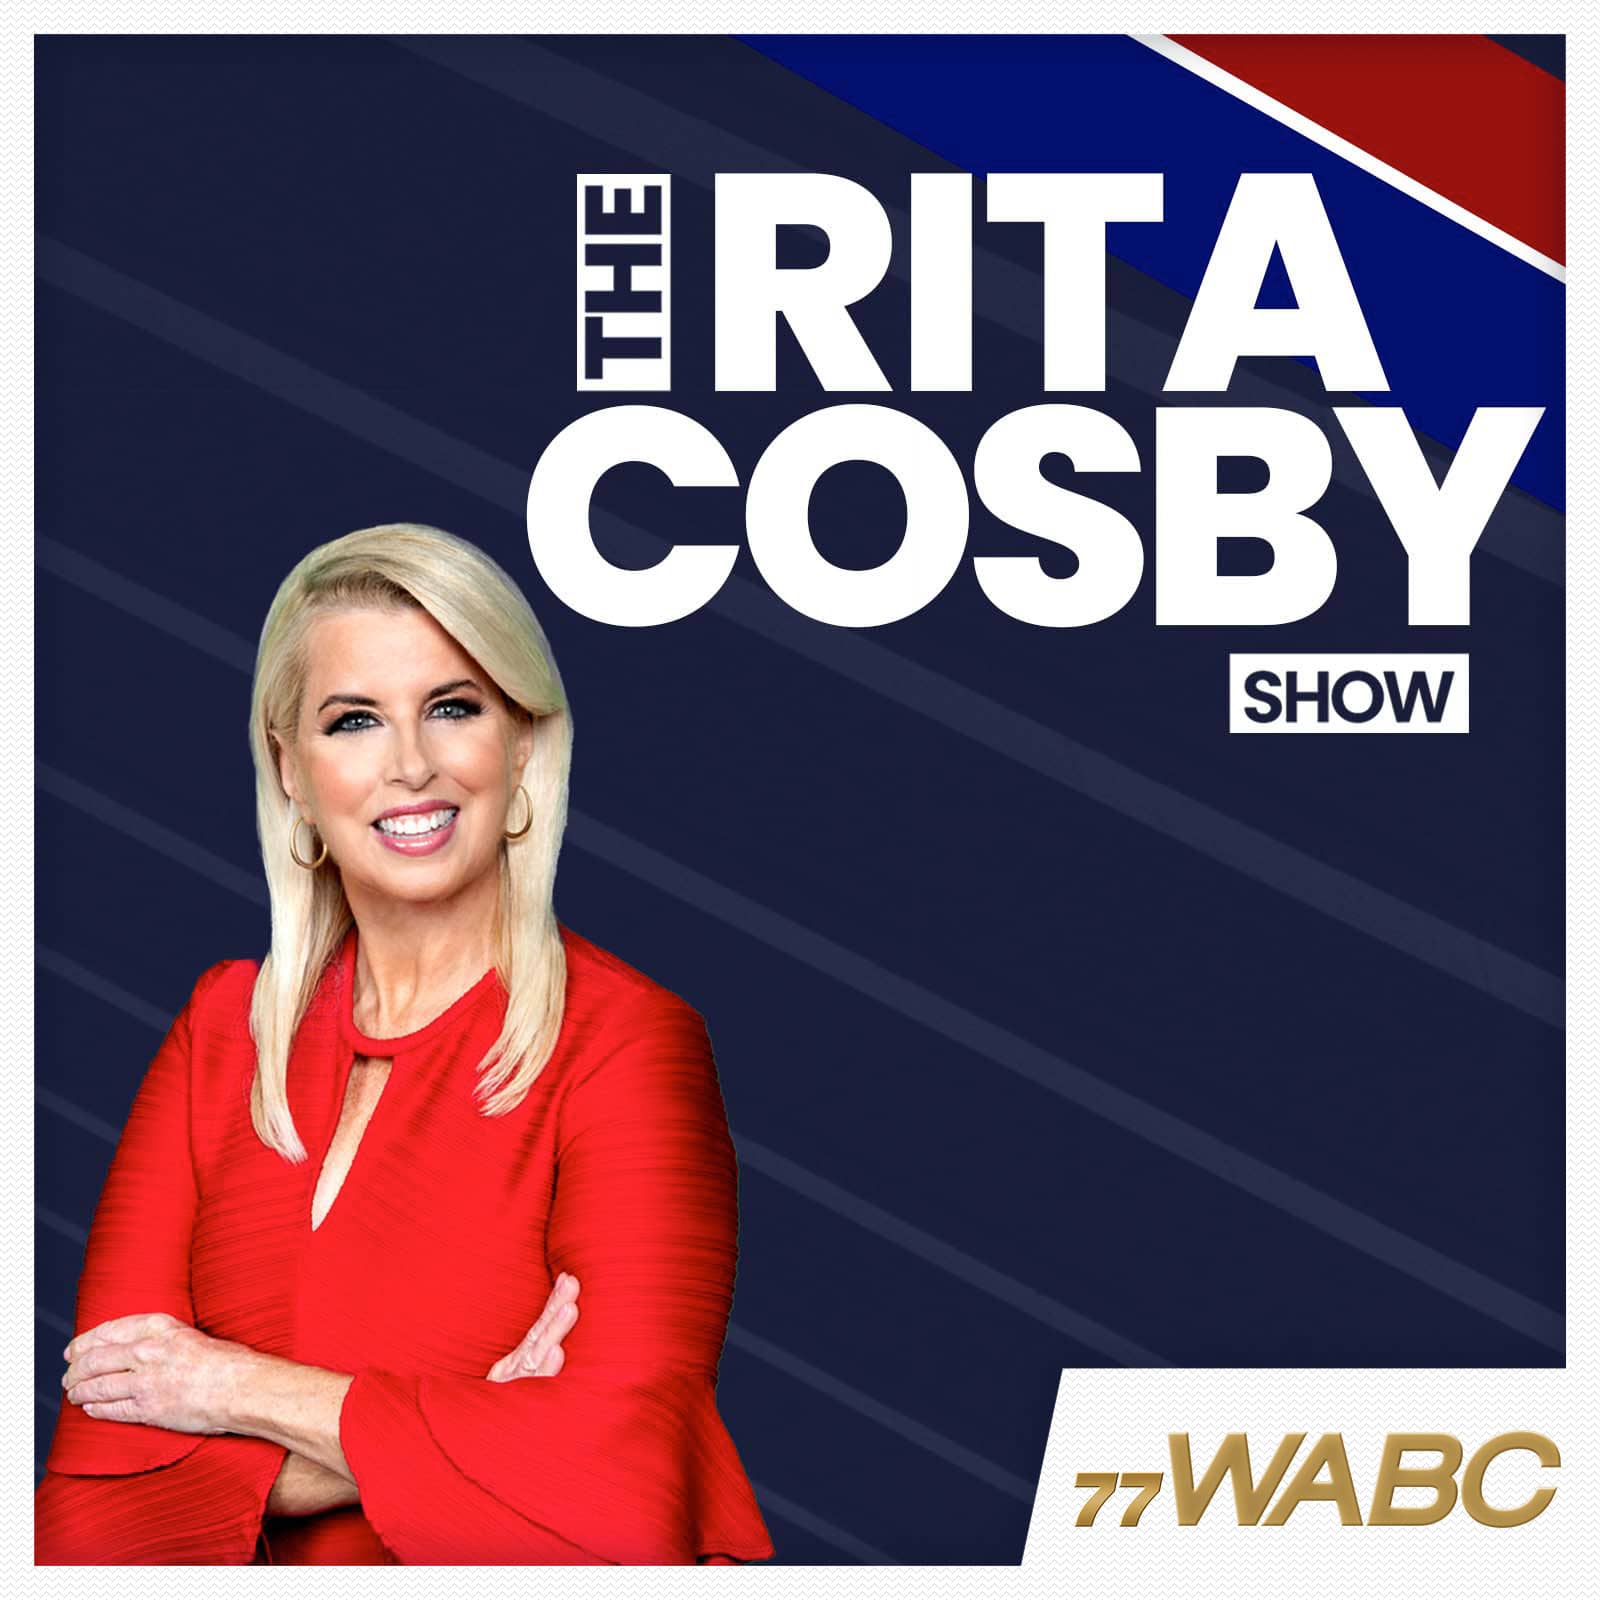 rita-cosby-podcast-new-logo-346